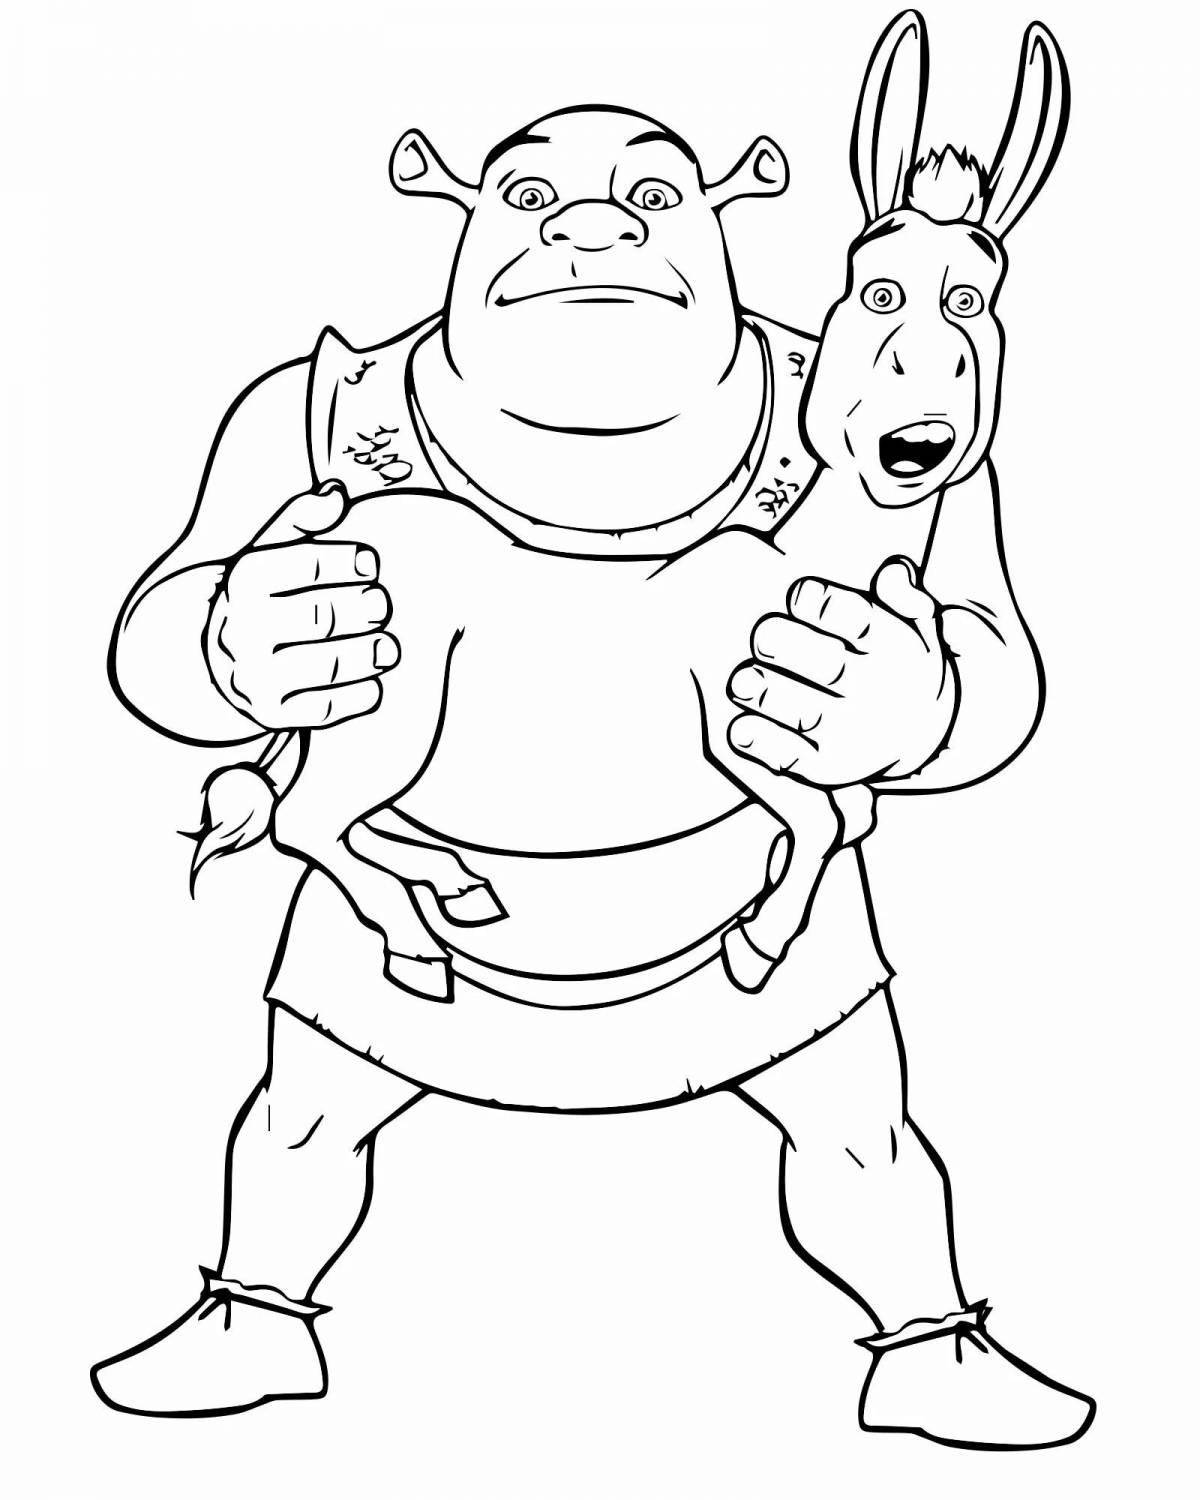 Shrek donkey humorous coloring book